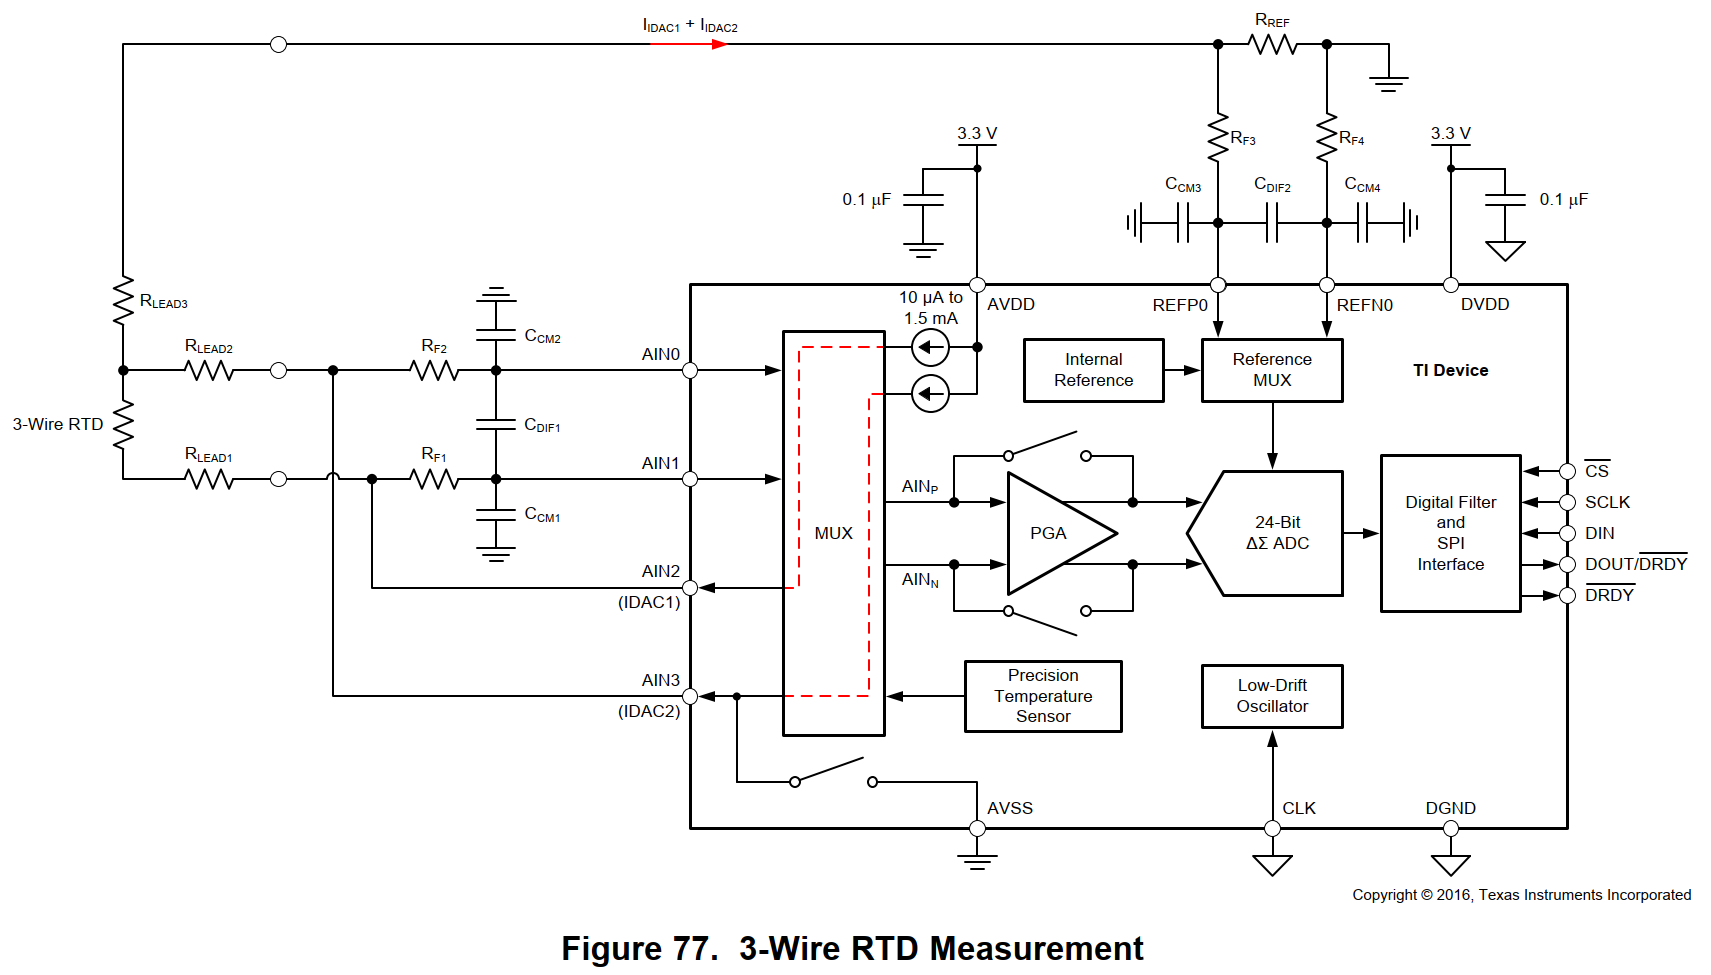 "Figure 77. 3-Wire RTD Measurement"